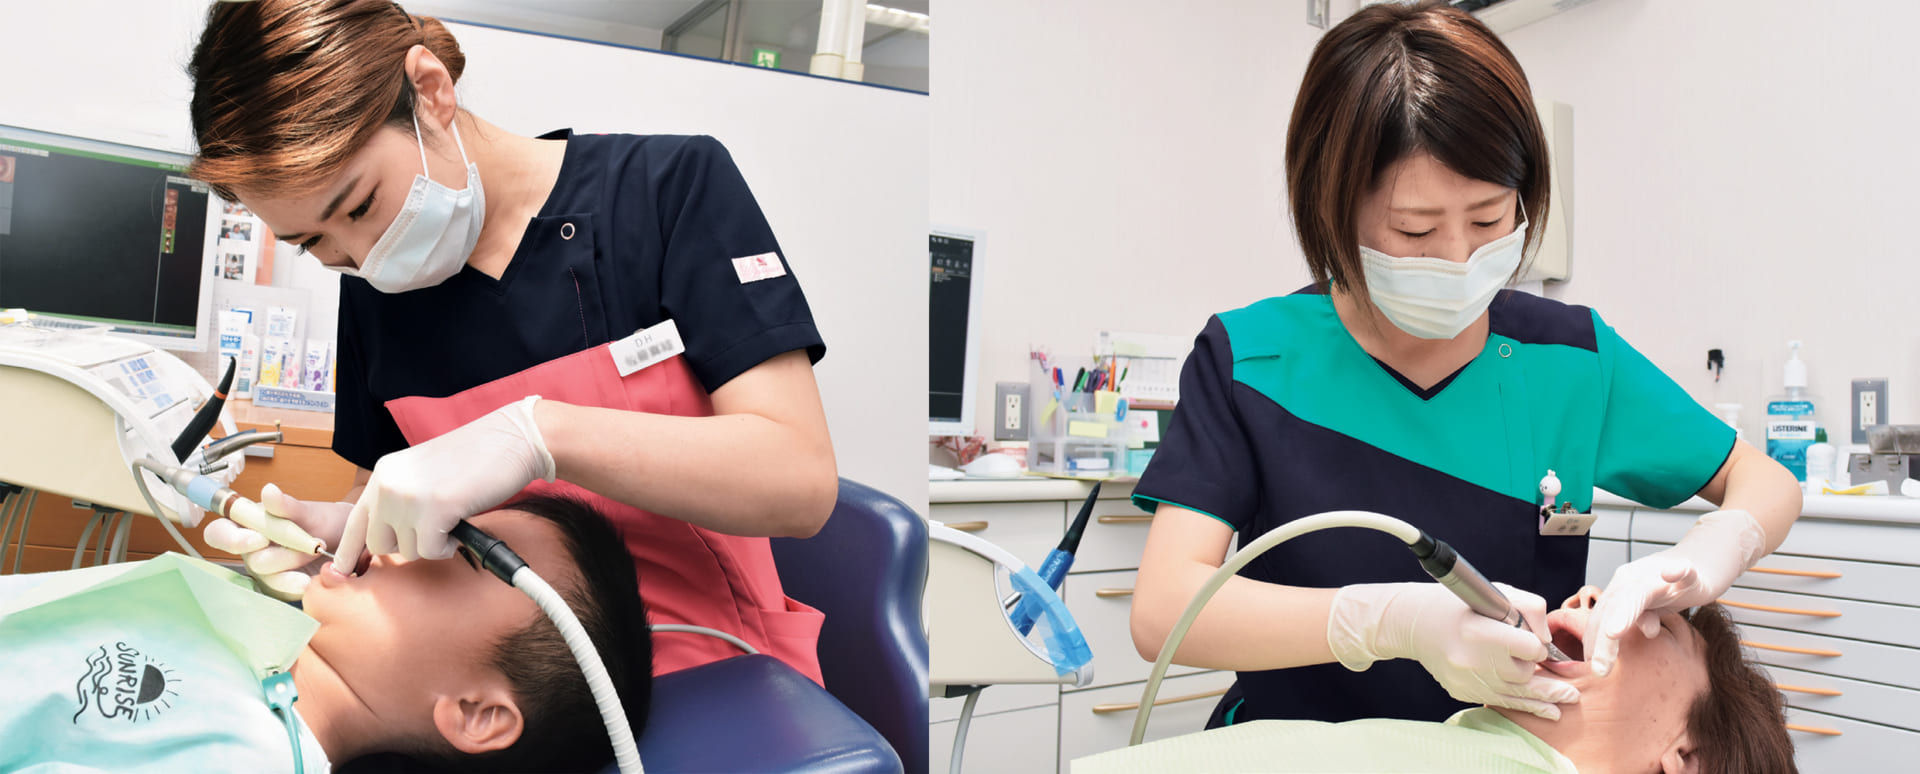 日吉歯科診療所 のユニフォーム採用事例 医療白衣・事務服ユニフォームのフォーク